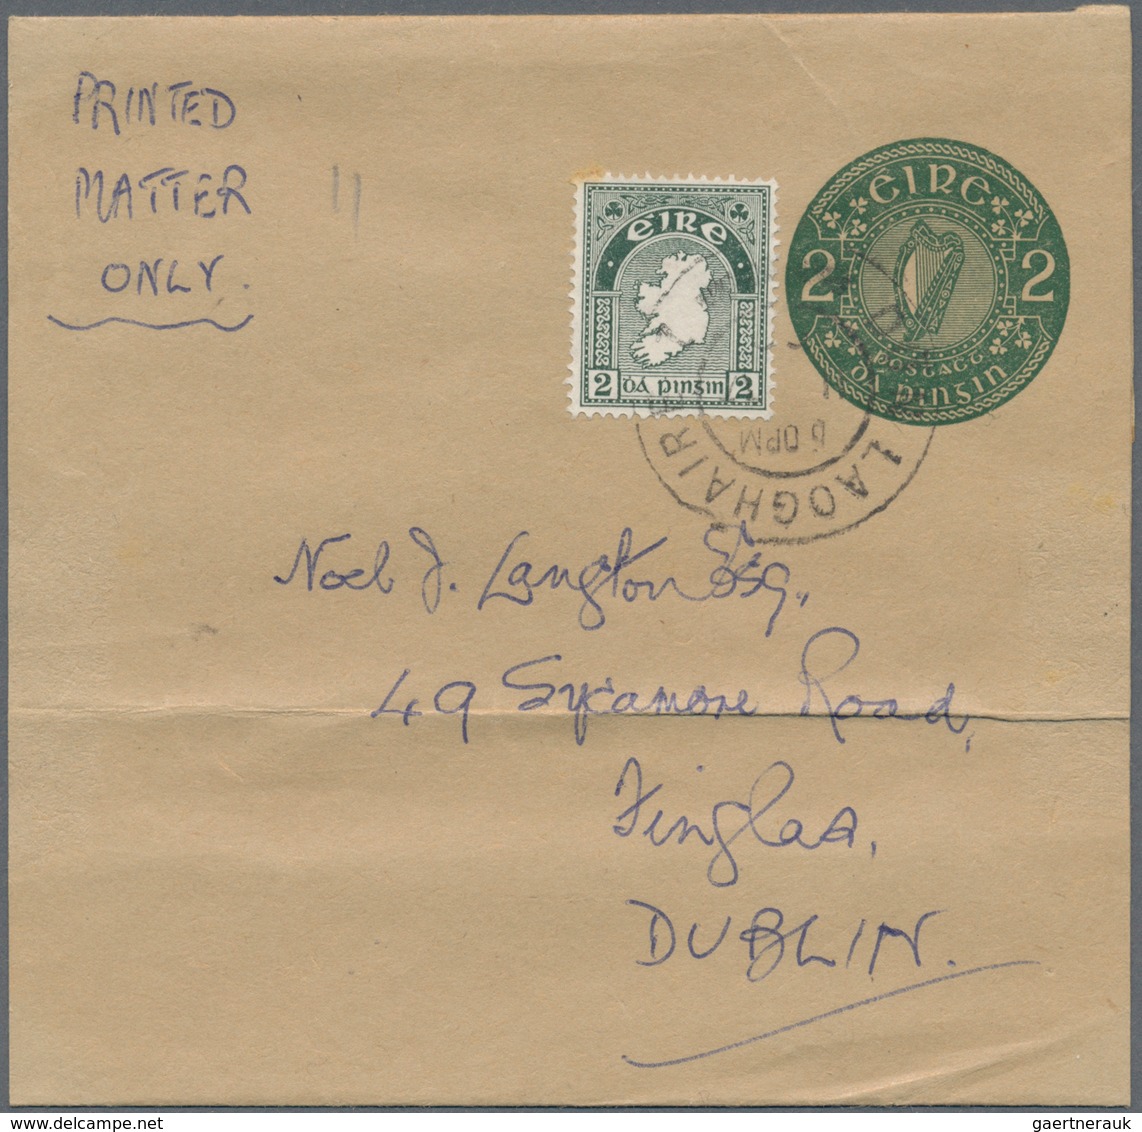 26849 Irland - Ganzsachen: 1924/1998, interessante Spezial-Sammlung der "Ganzsachen-Kartenbriefe und Strei